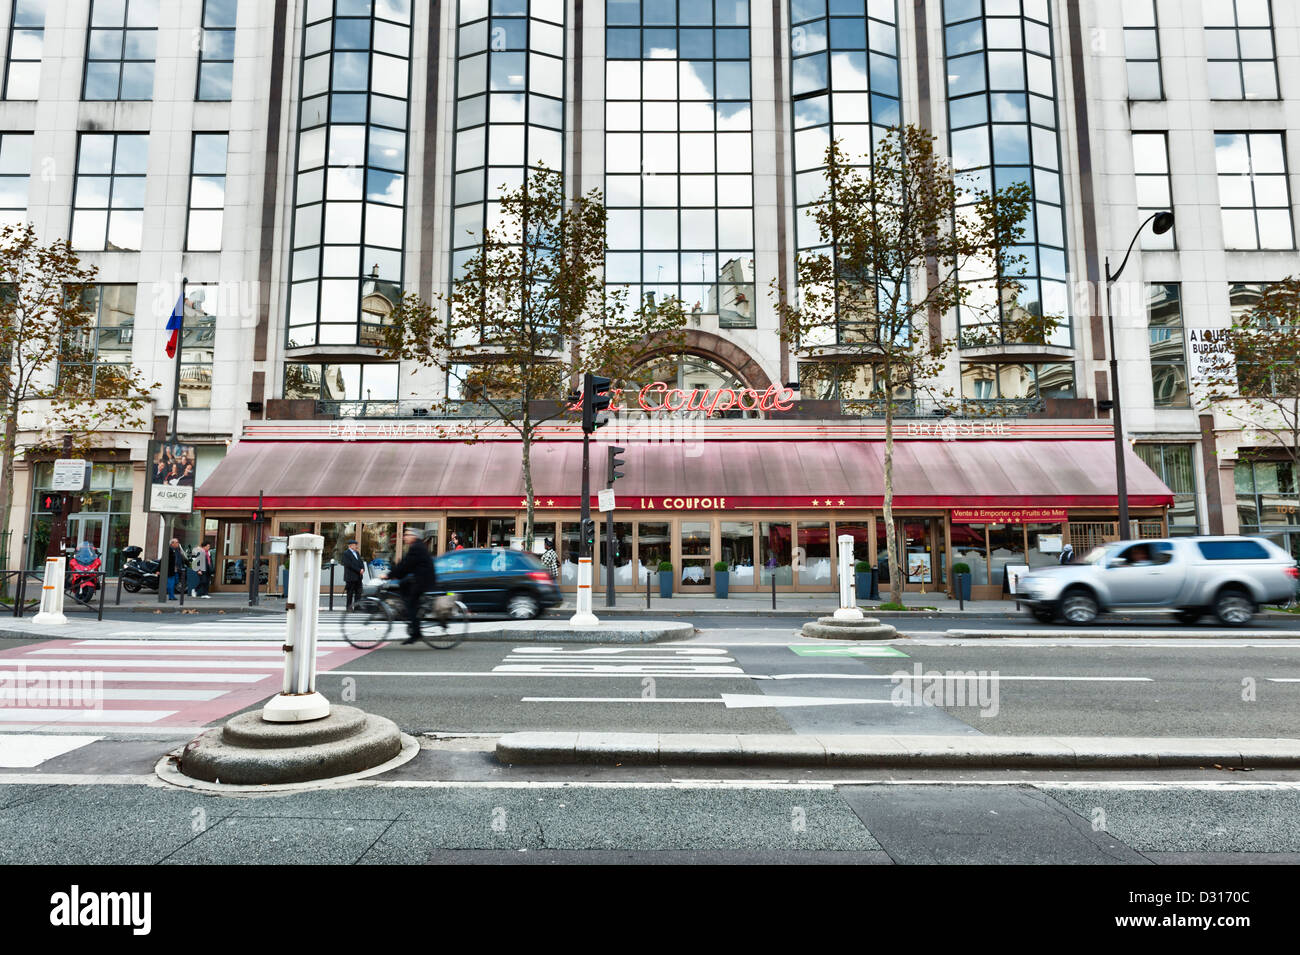 La Coupole - un famoso storico ristorante brasserie sul Boulevard du Montparnasse di Parigi, Francia Foto Stock